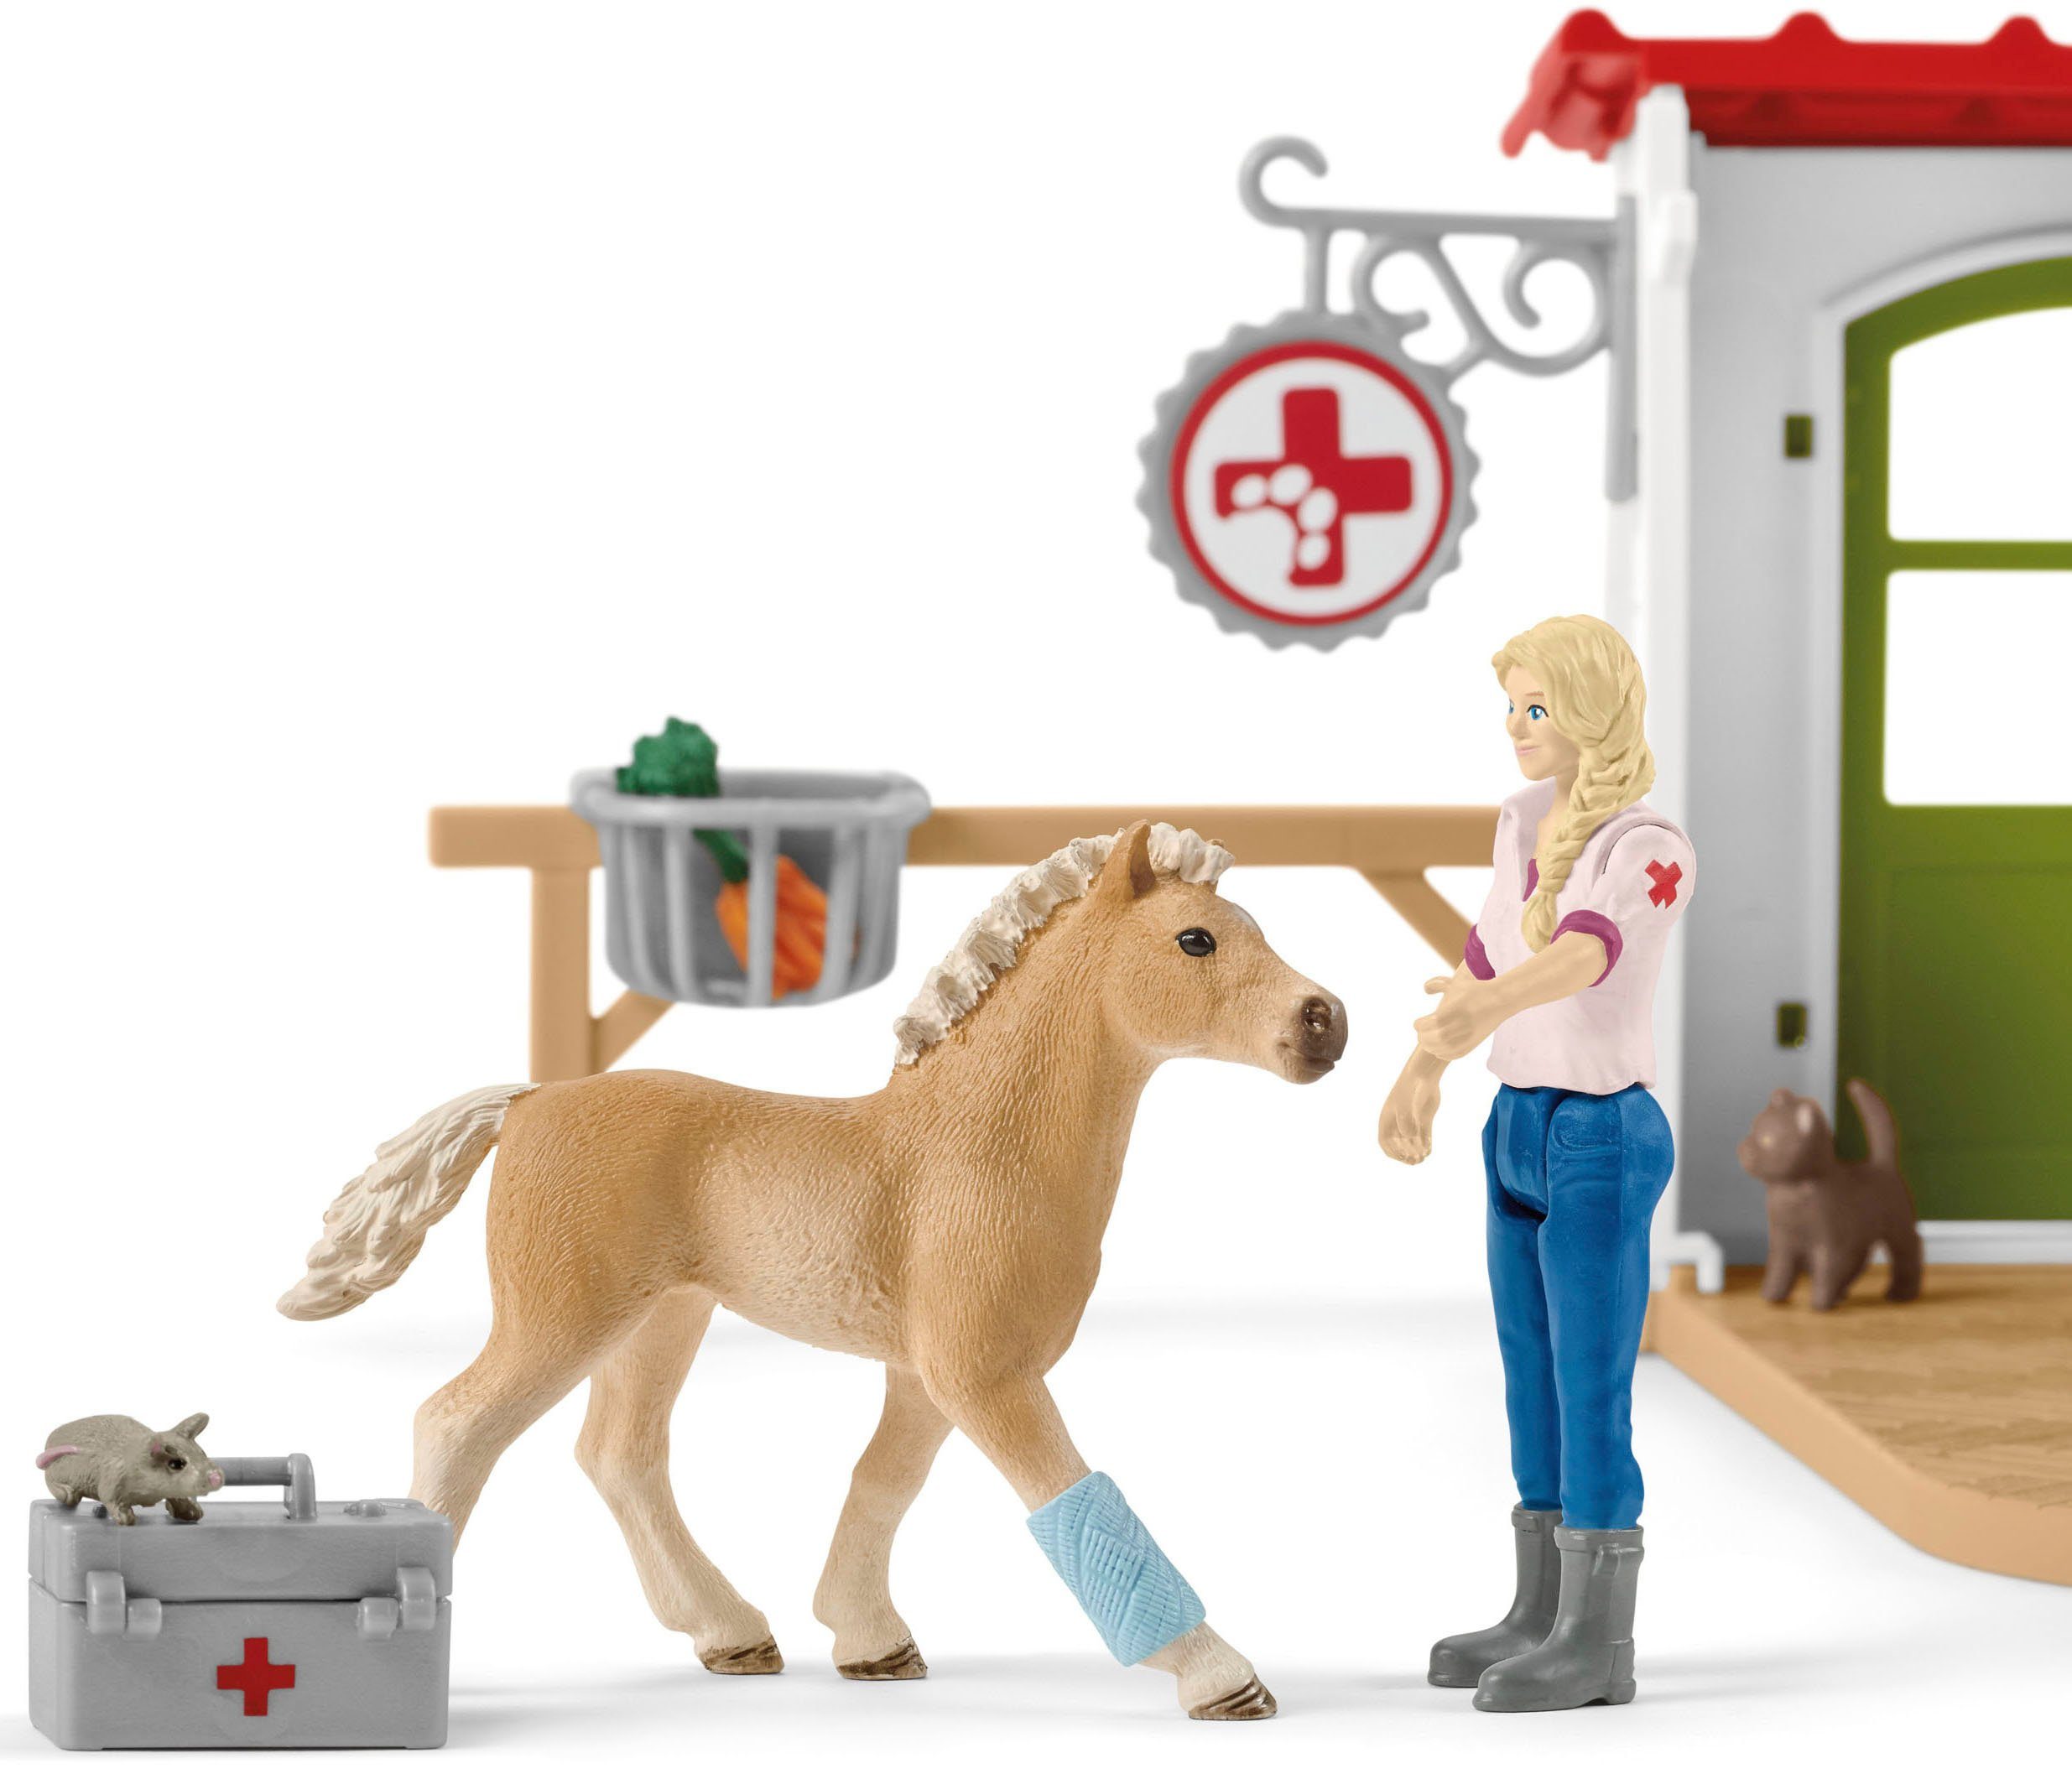 Schleich® Spielwelt FARM WORLD, (42502), in Haustieren mit Tierarzt-Praxis Europe Made